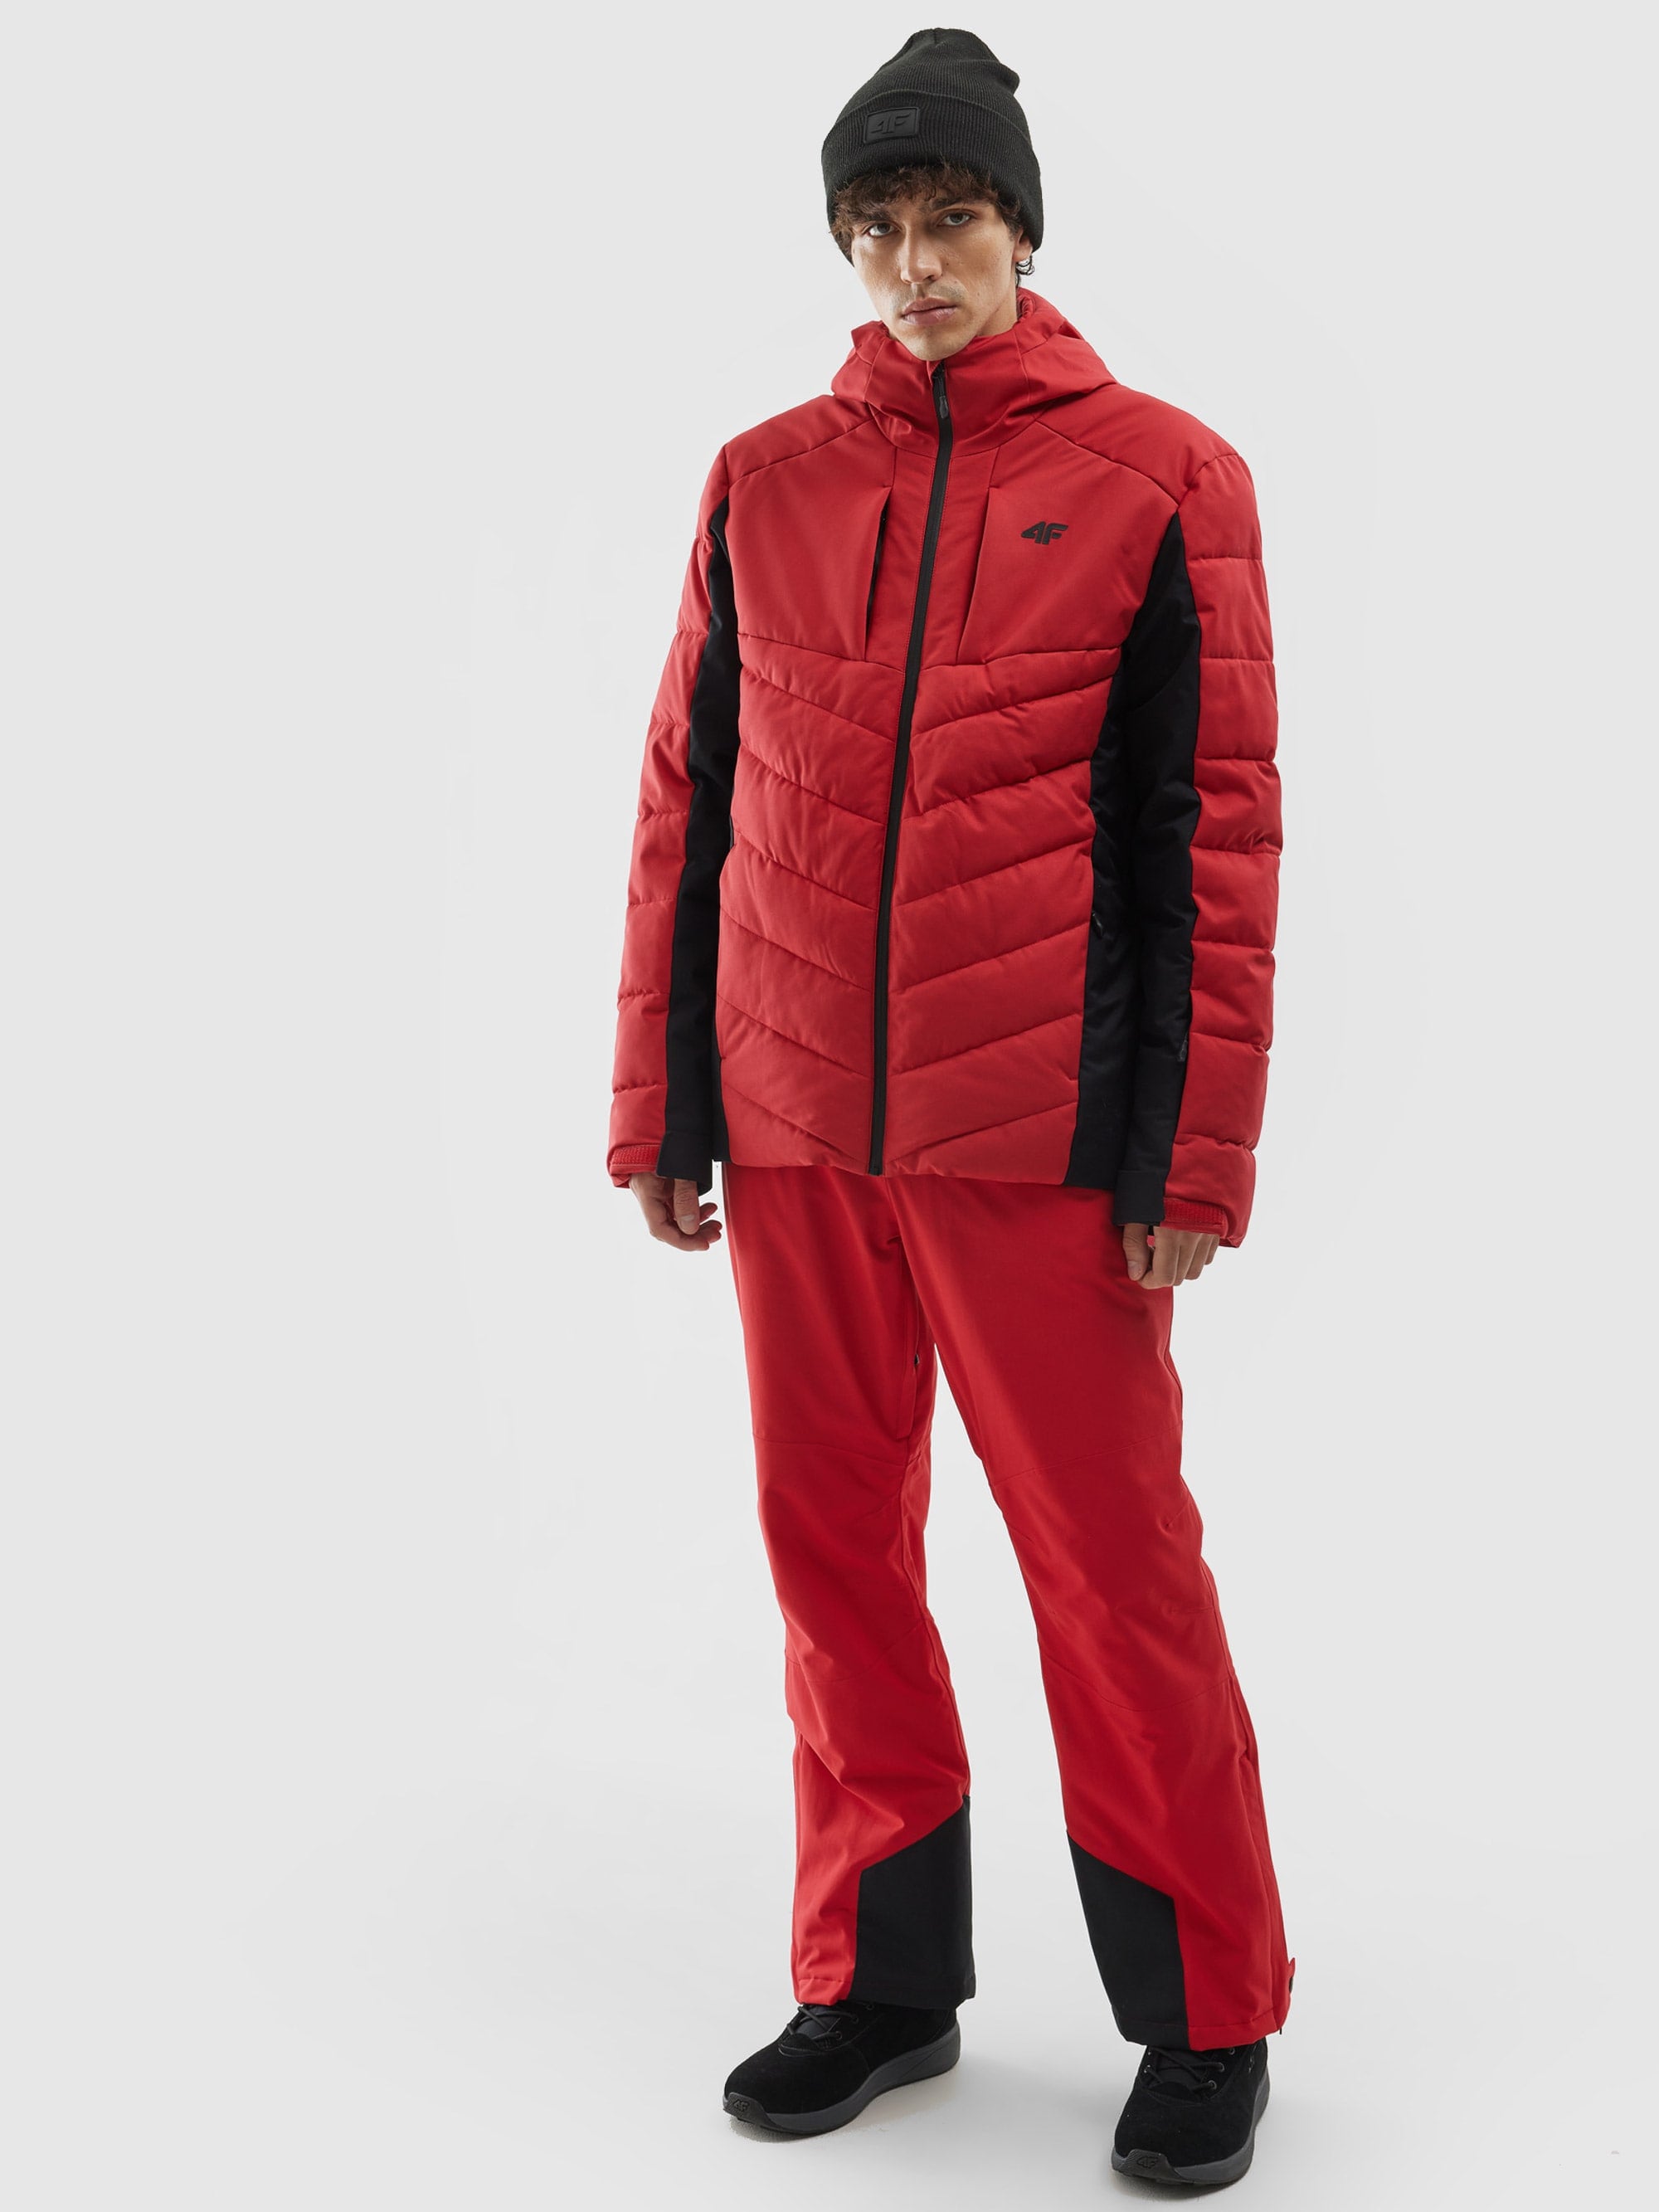 Pánska zatepľovacia lyžiarska bunda so syntetickou výplňou - červená